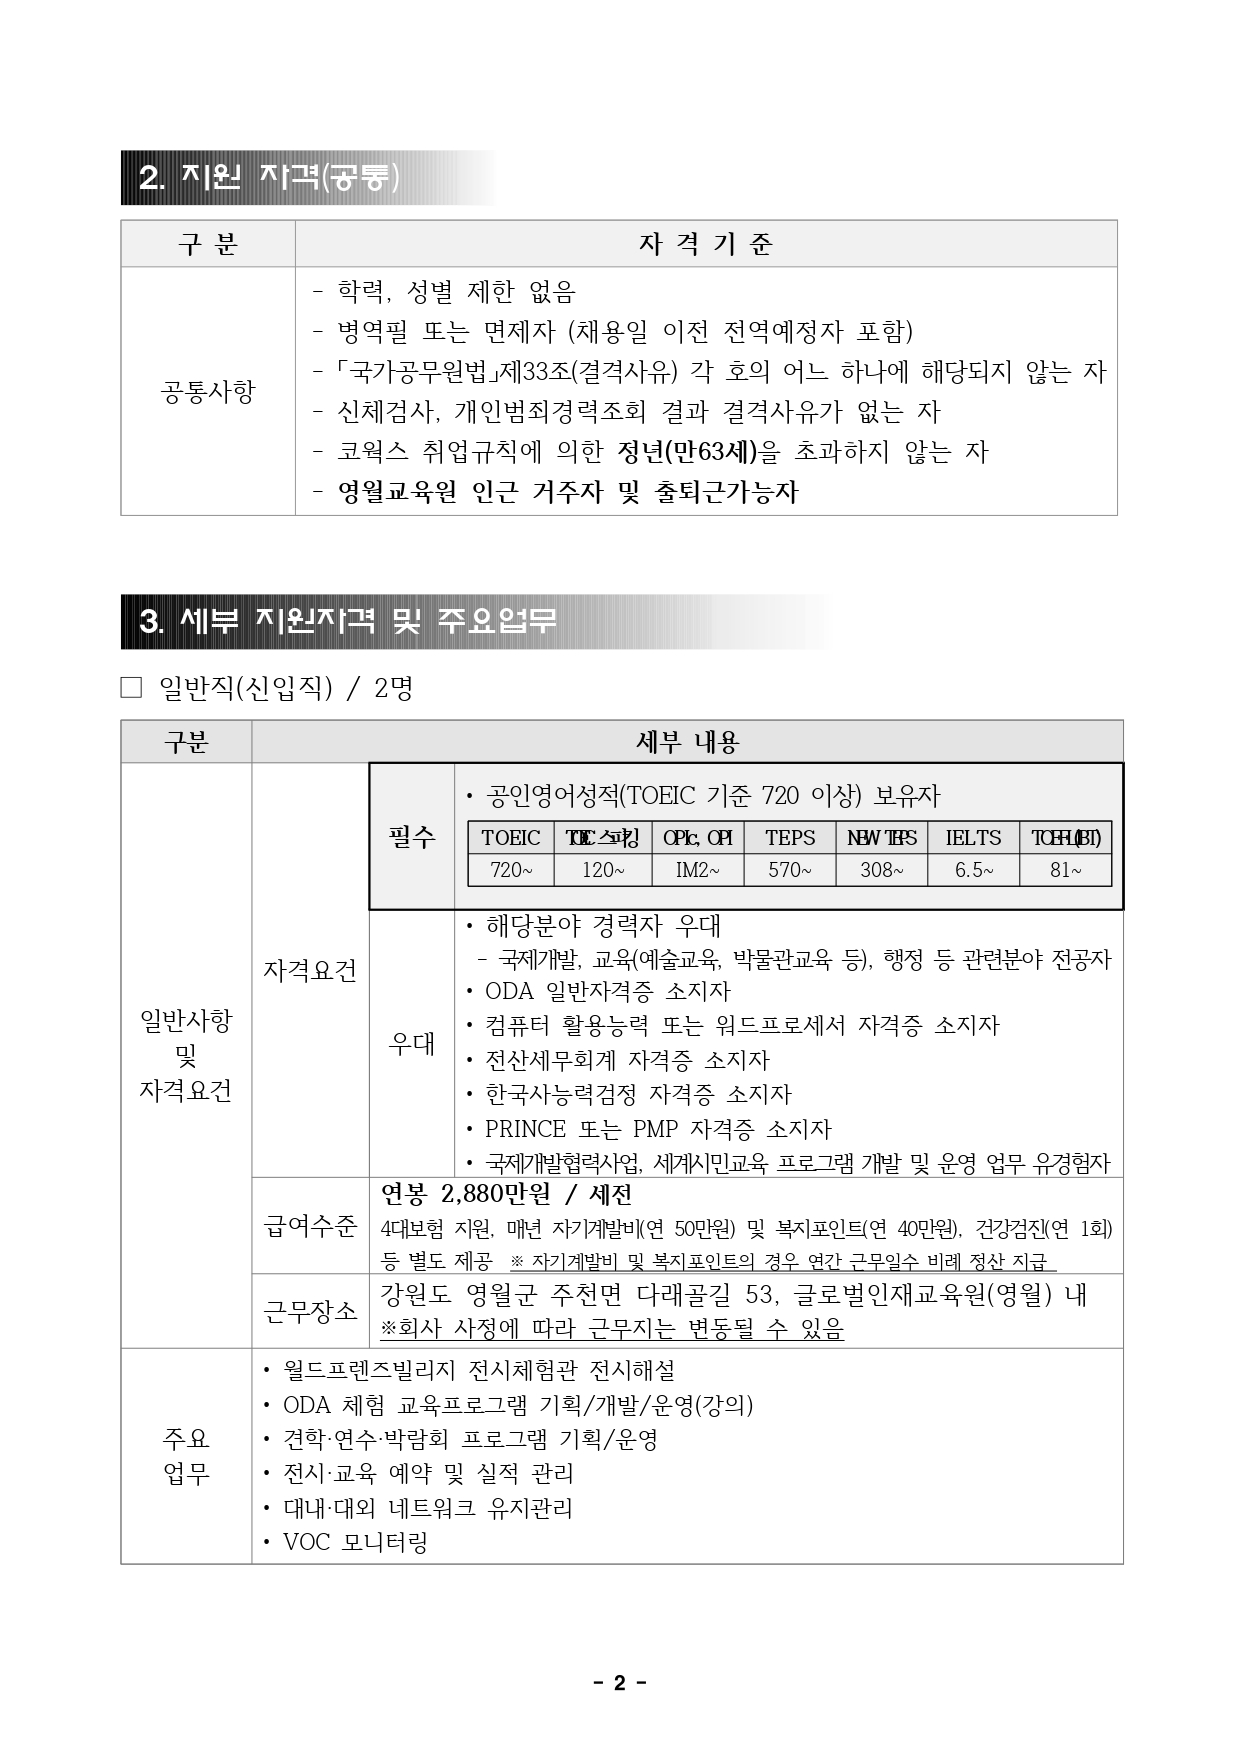 붙임1. 12월 직원채용 공고문(영월,일반직)_page-0002.jpg